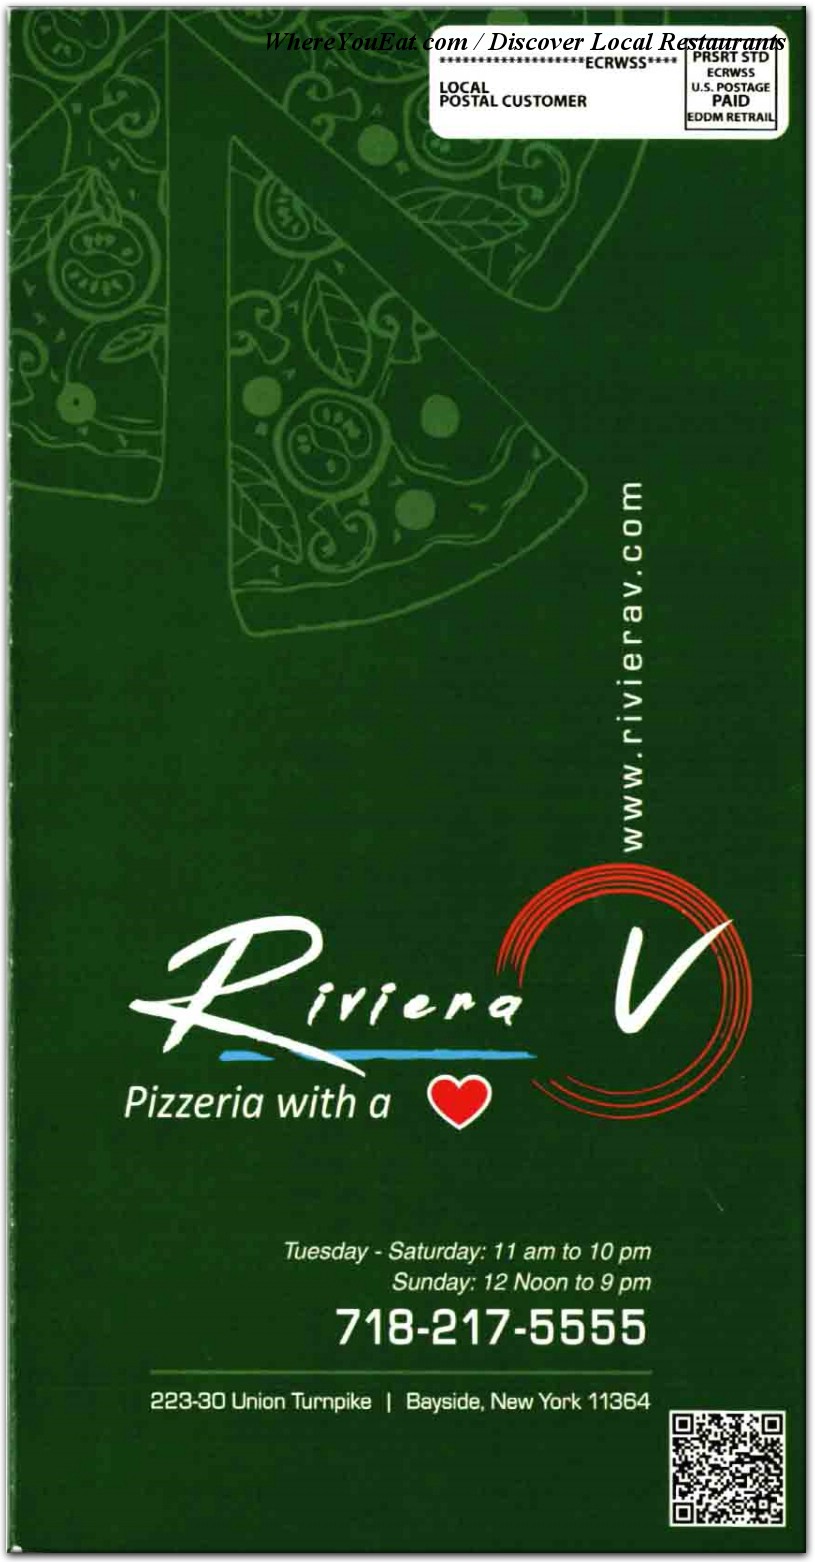 Riviera-V Pizzeria